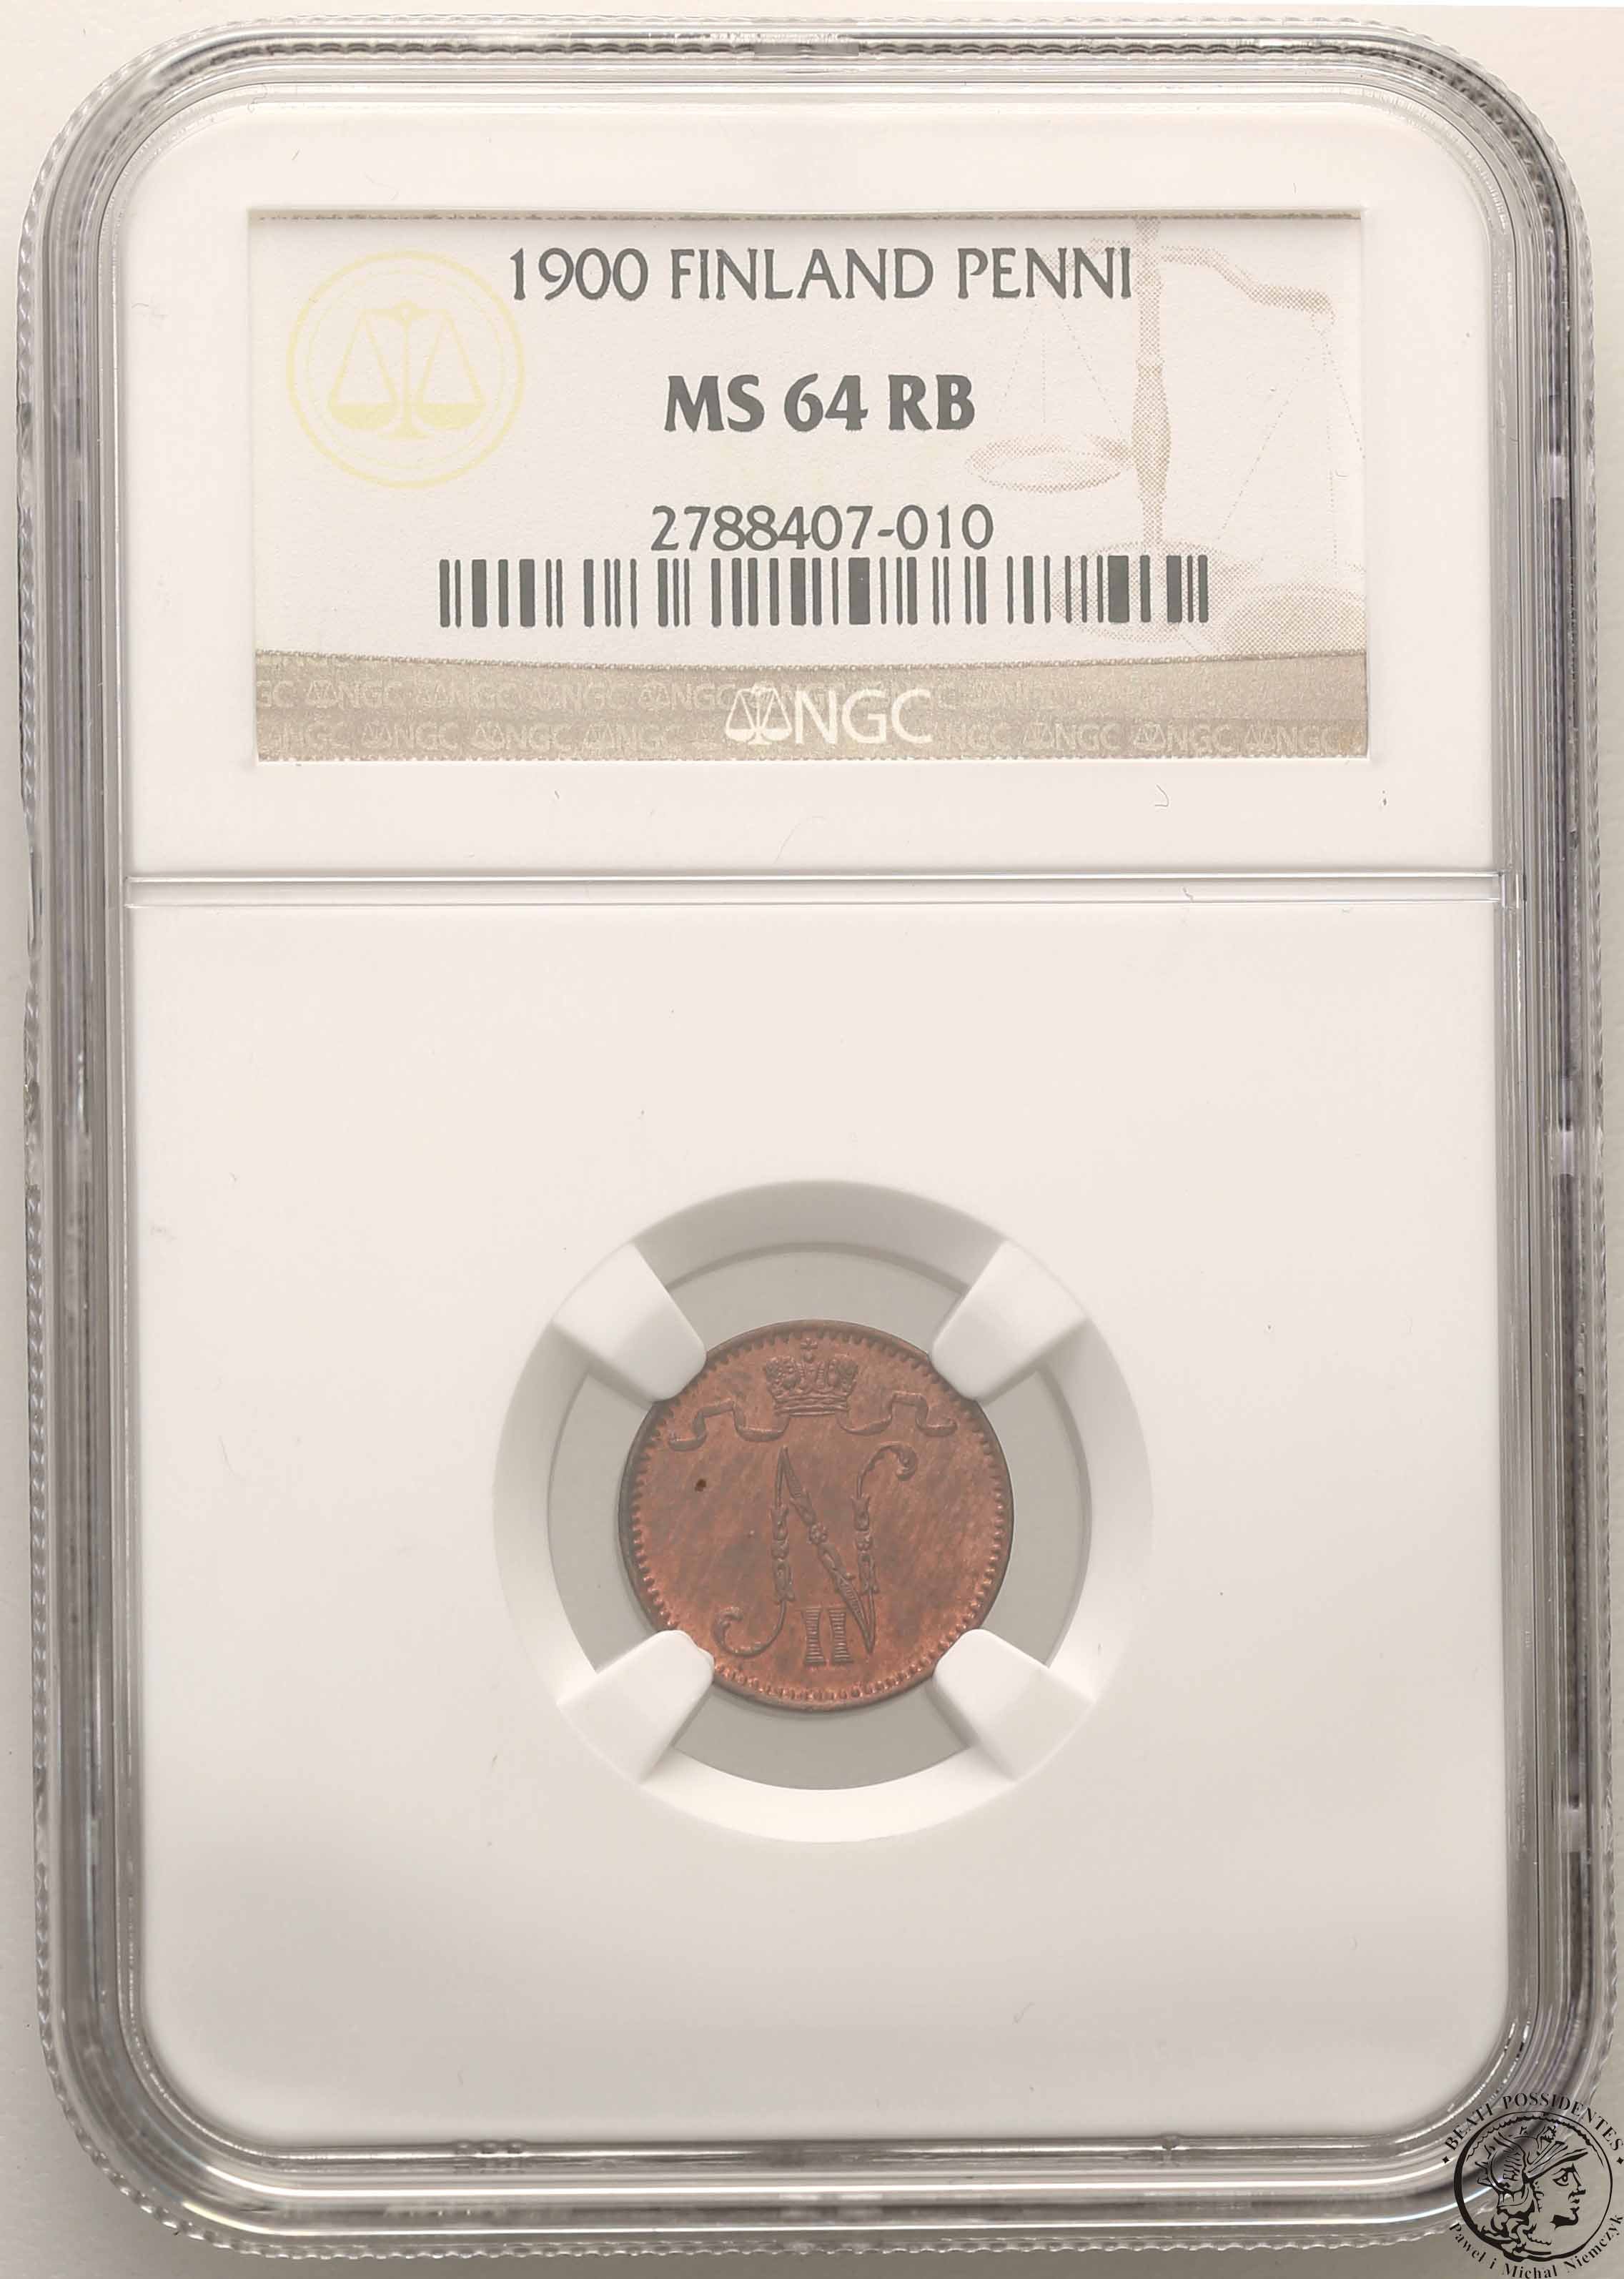 Rosja Mikołaj ll Finlandia (rosyjska) 1 penni 1900 NGC MS64 RB